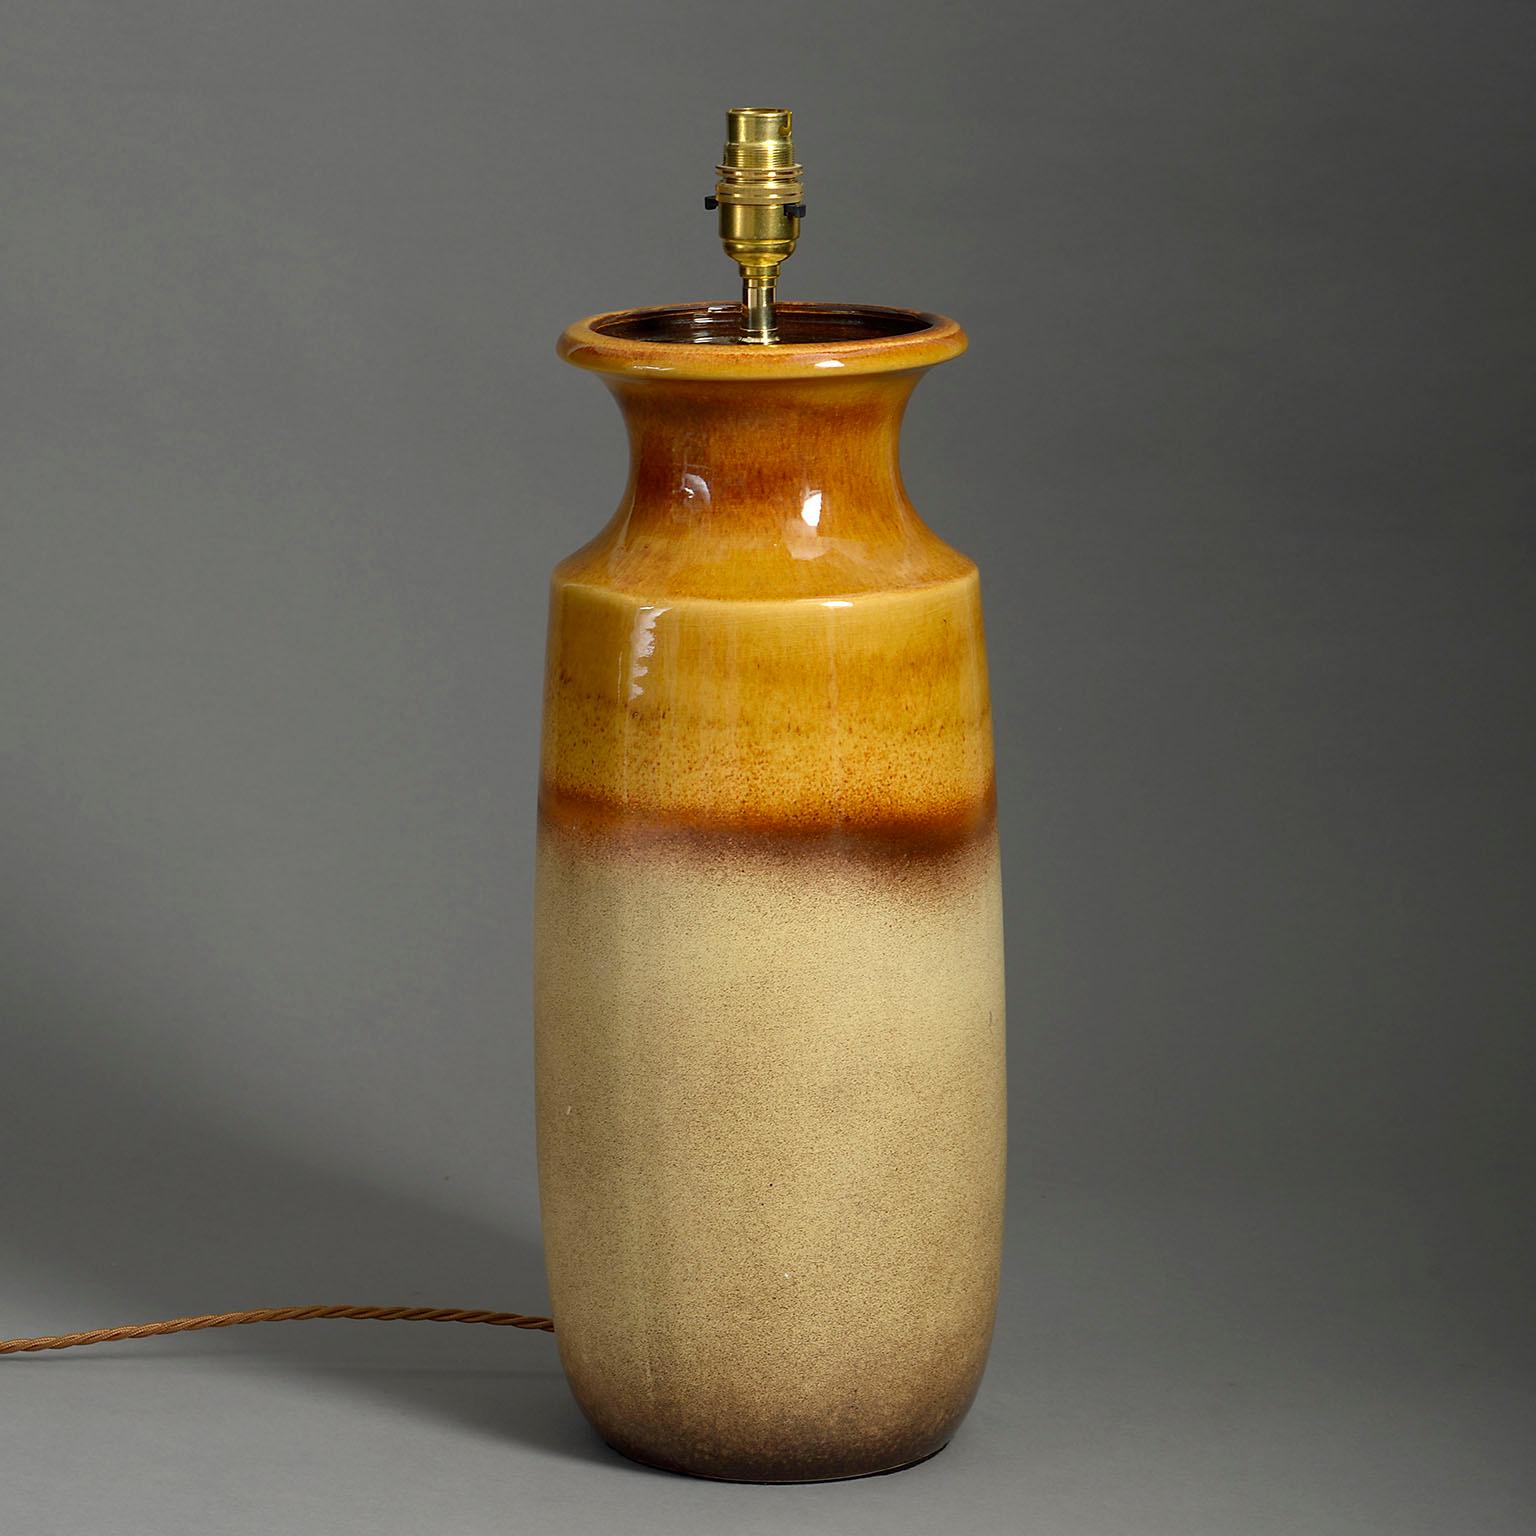 Vase en poterie du milieu du XXe siècle, décoré de glaçures orange, rouge profond et crème à texture chaude. Comme lampe de table.

Les dimensions se rapportent au vase en céramique uniquement.

Câblé selon les normes britanniques. Cette lampe peut